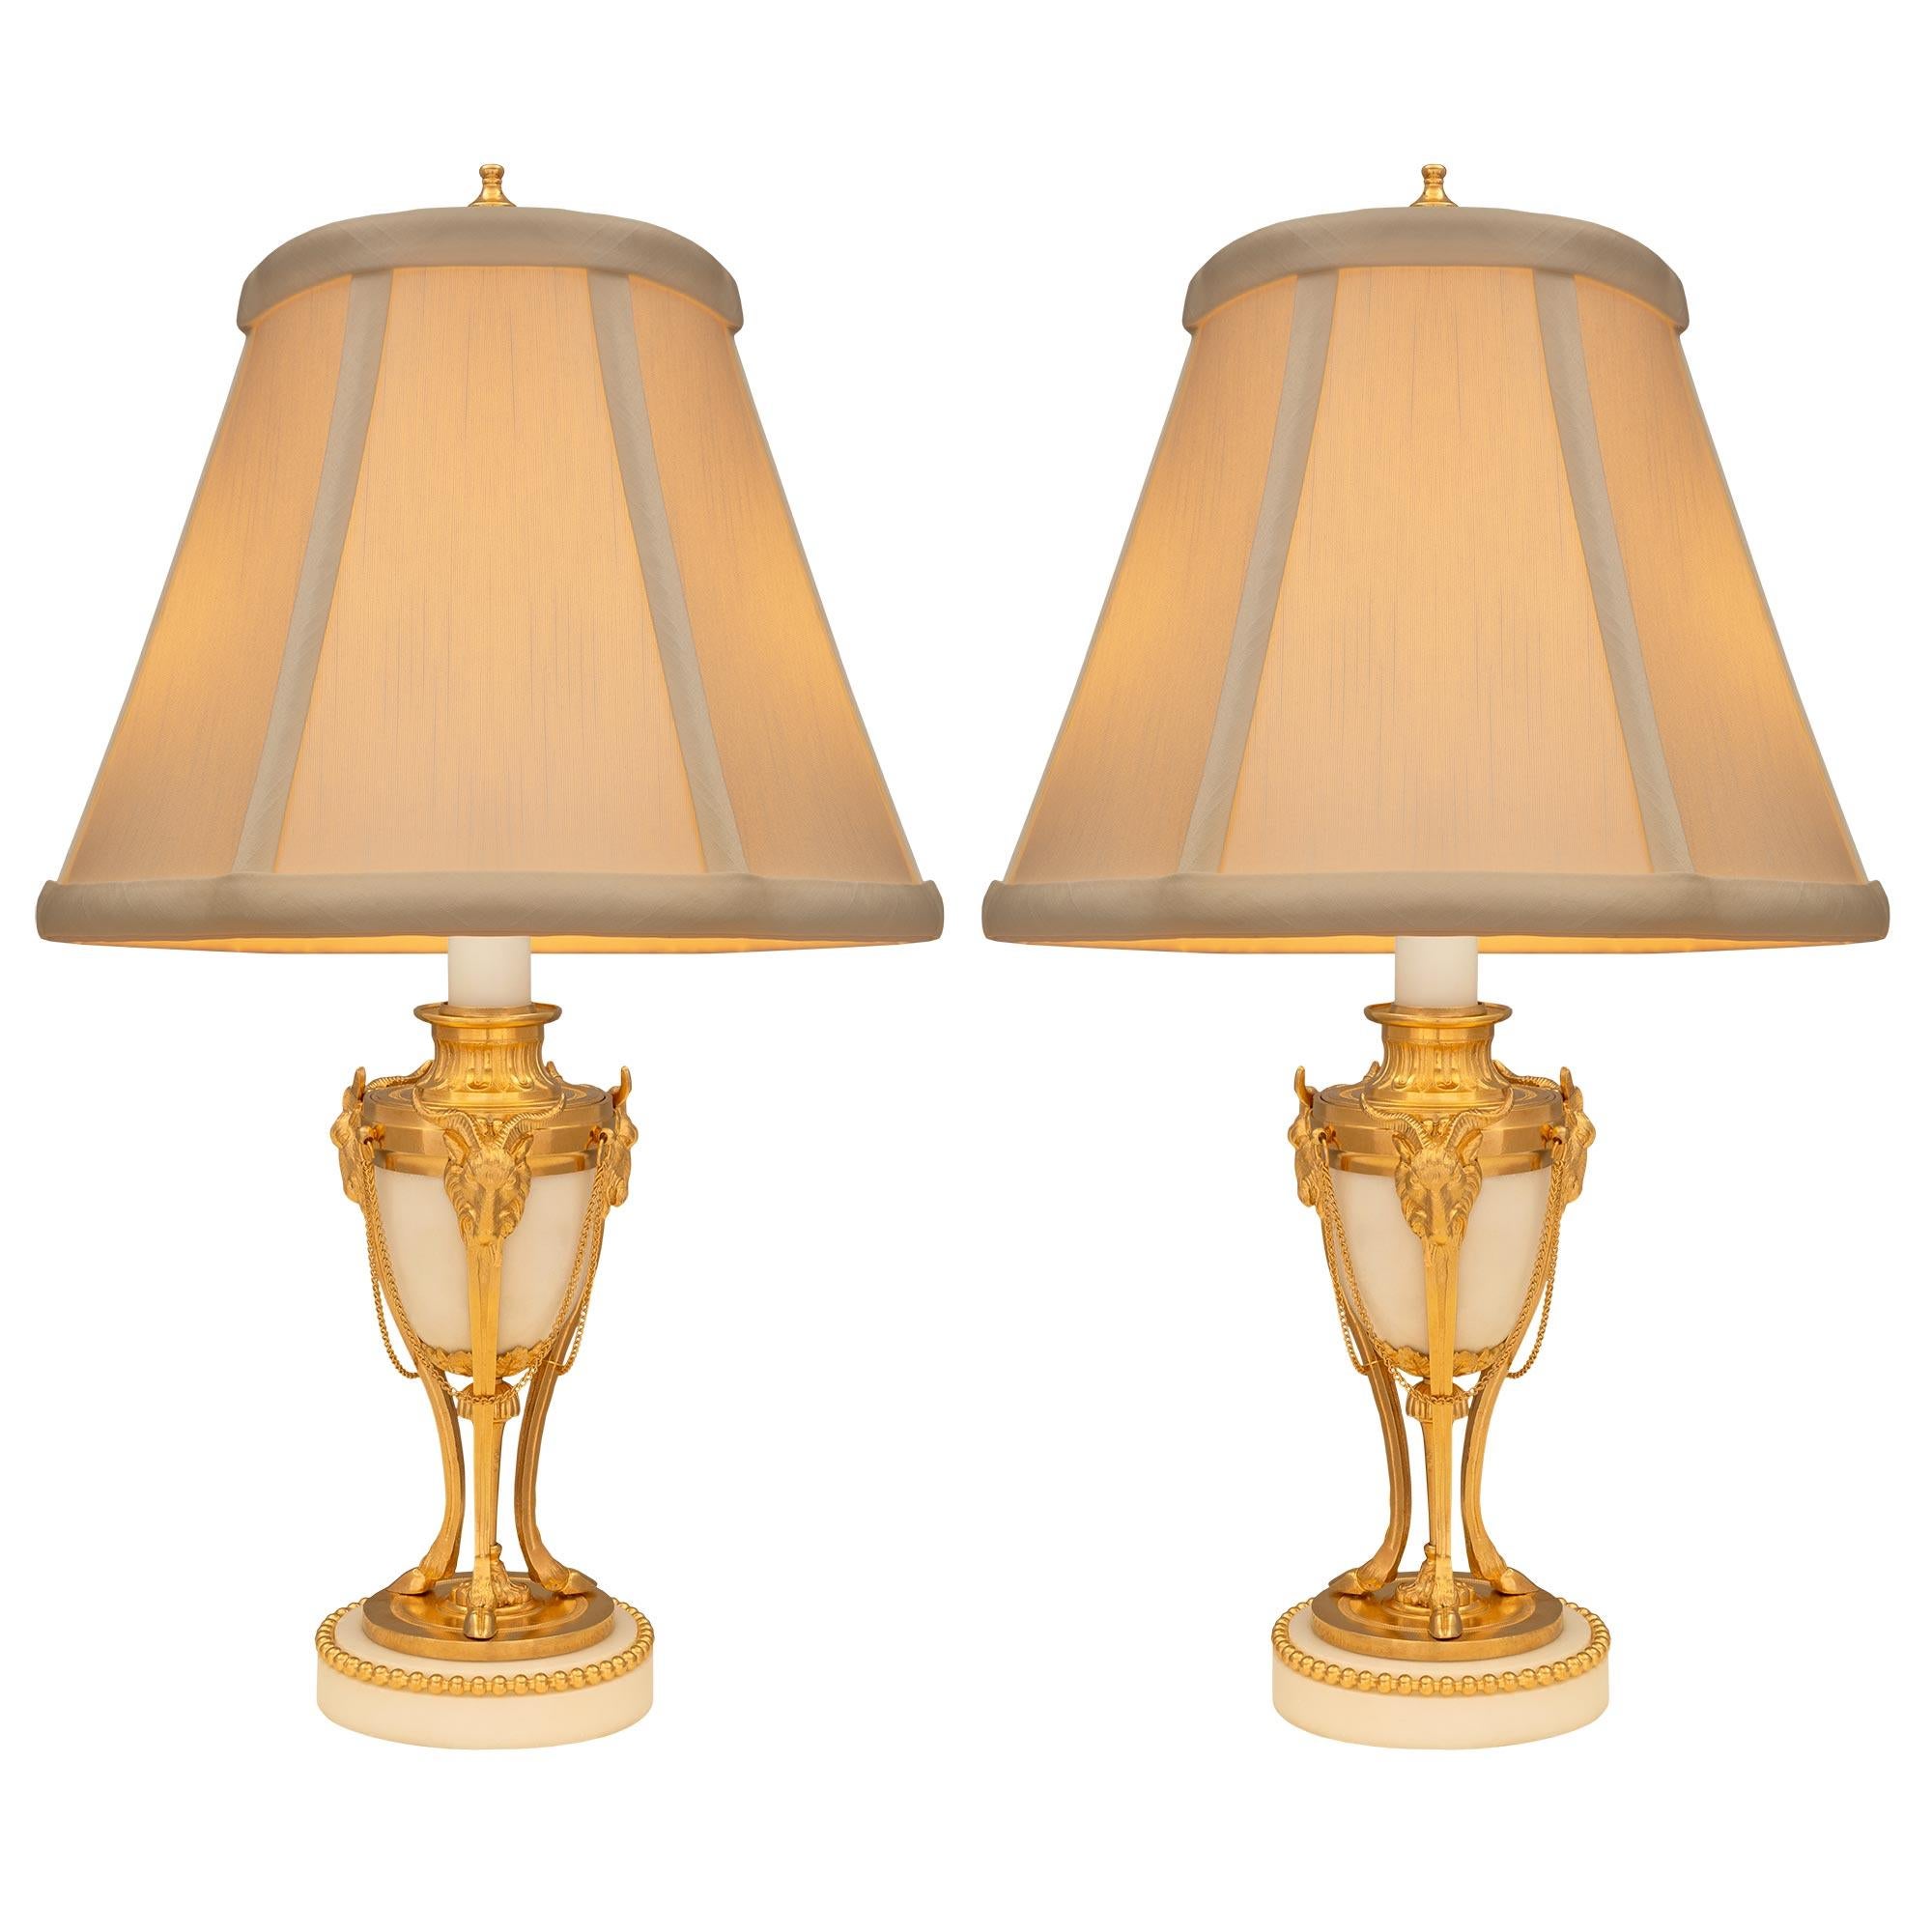 Ein elegantes Paar französischer Lampen aus dem 19. Jahrhundert aus weißem Carrara-Marmor und Ormolu. Jede Leuchte steht auf einem runden Sockel aus weißem Carrara-Marmor, der mit einem fein gearbeiteten, perlenbesetzten Ormolu-Band umrandet ist.